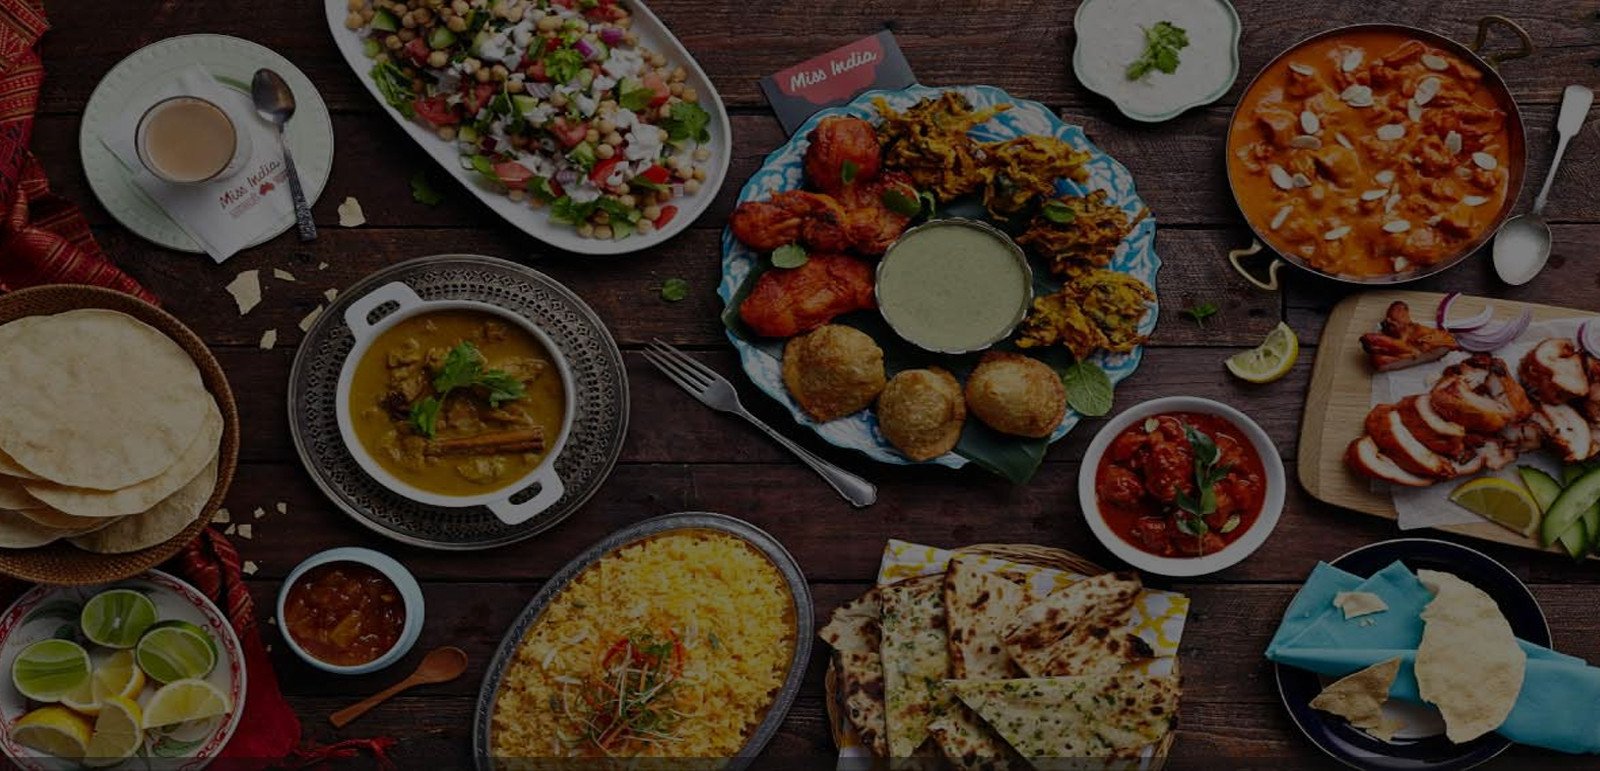 عکس تاریک و آماده نوشتن از انواع غذای ایرانی و سنتی رستورانی